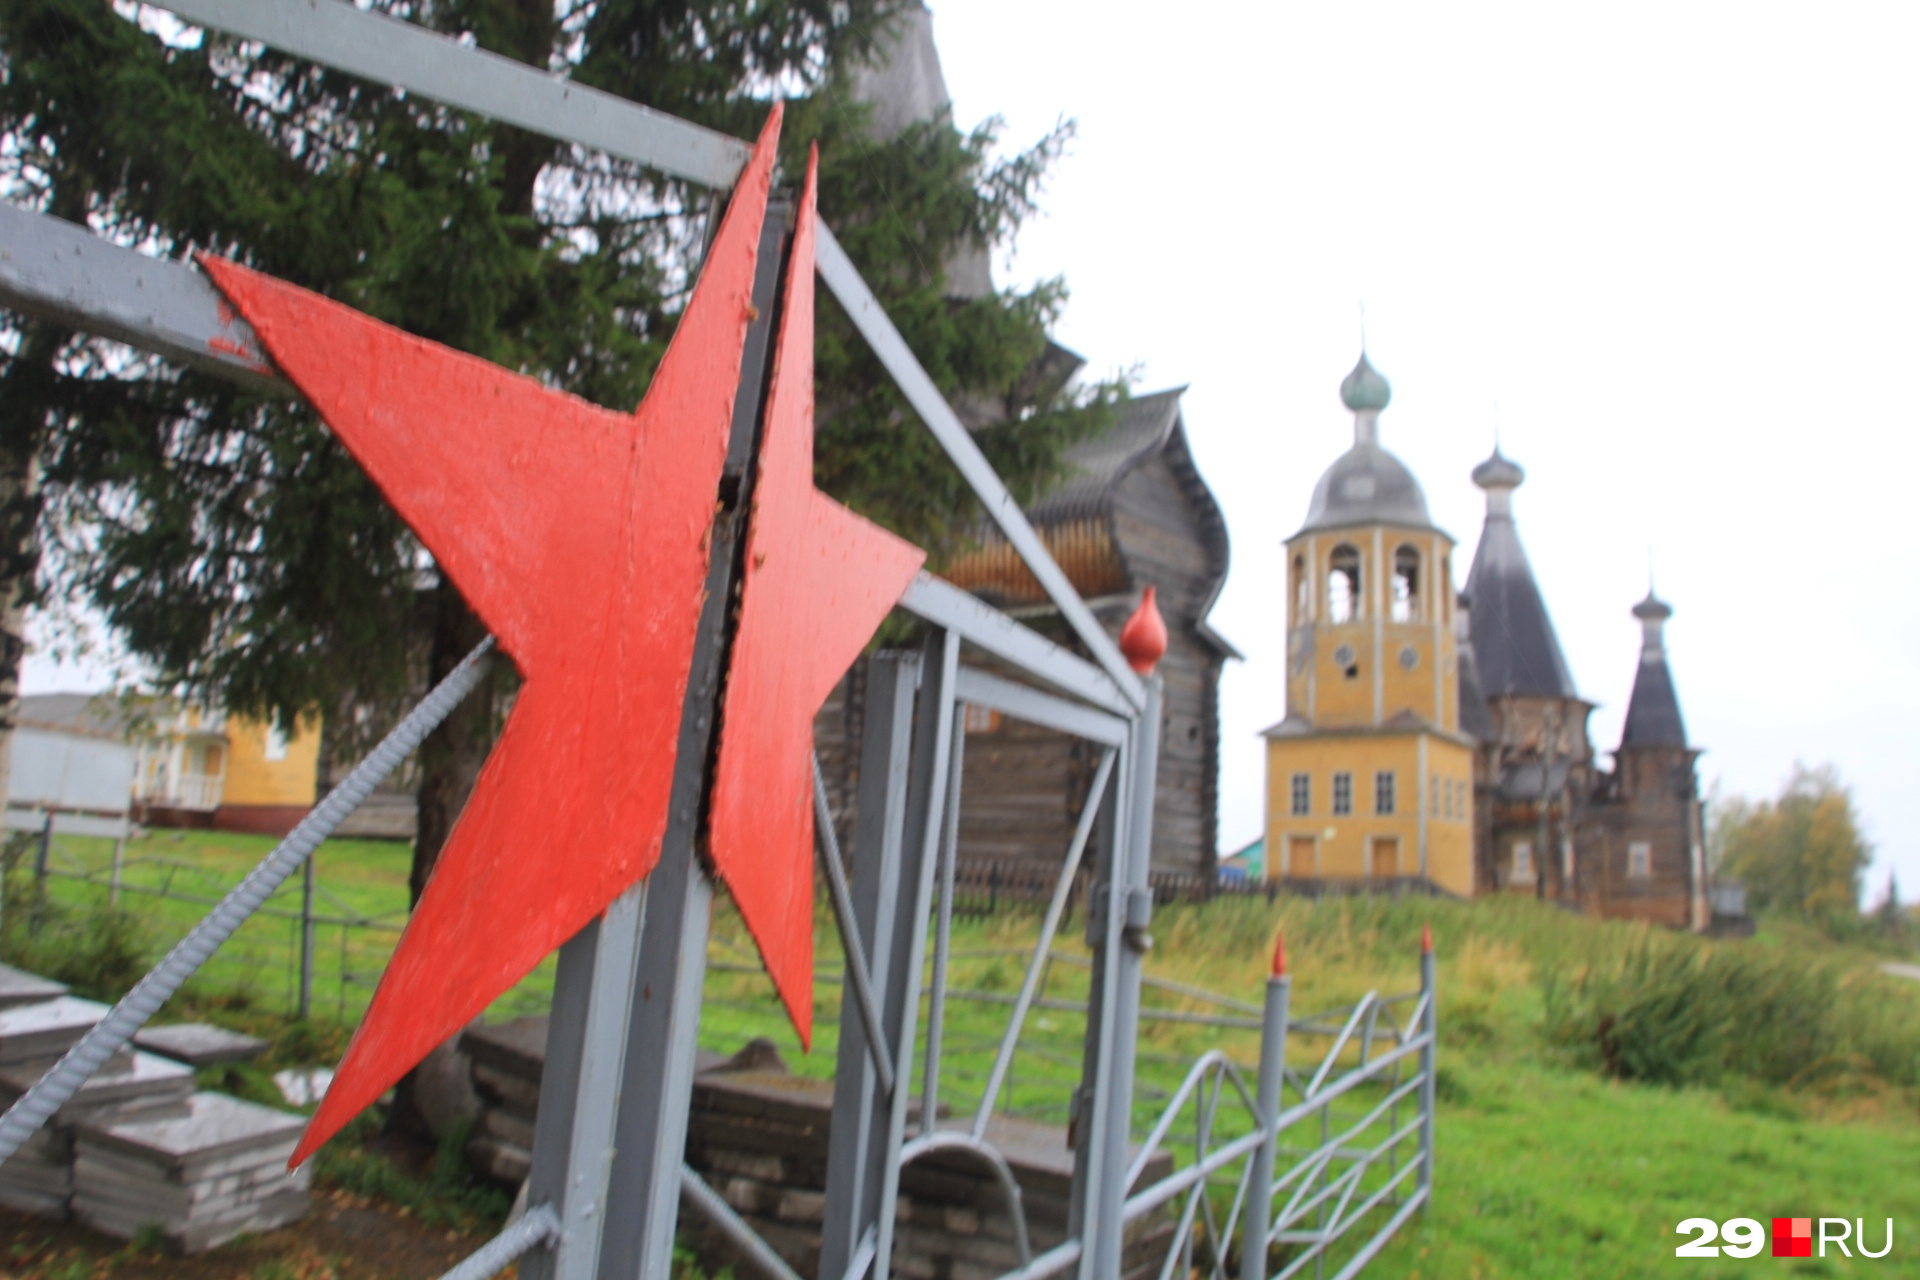 Музеи с экспонатами прошлых веков и православная архитектура соседствуют здесь с советской эстетикой и погребами из обломков ракет